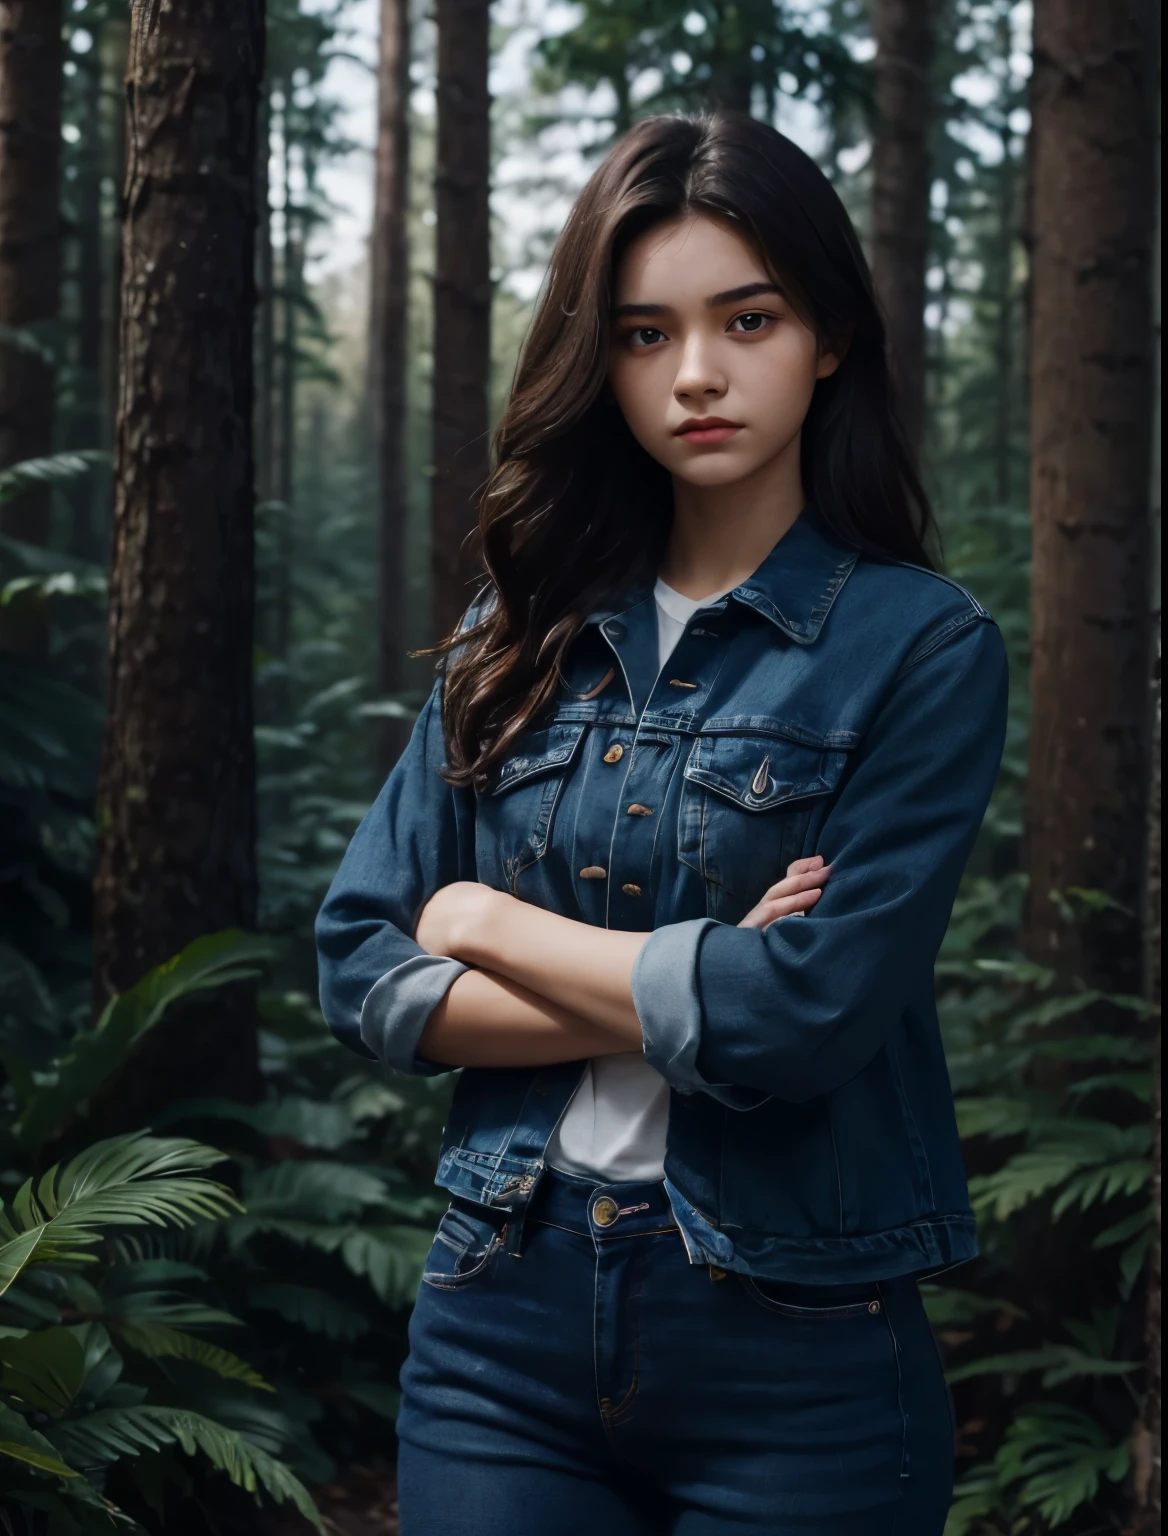 きれいな女の人. 15歳. 彼女は腕を組んで反抗的な表情をしています. 彼女はブルージーンズを履いている. 濃い茶色の髪. 彼女は森の中にいます.